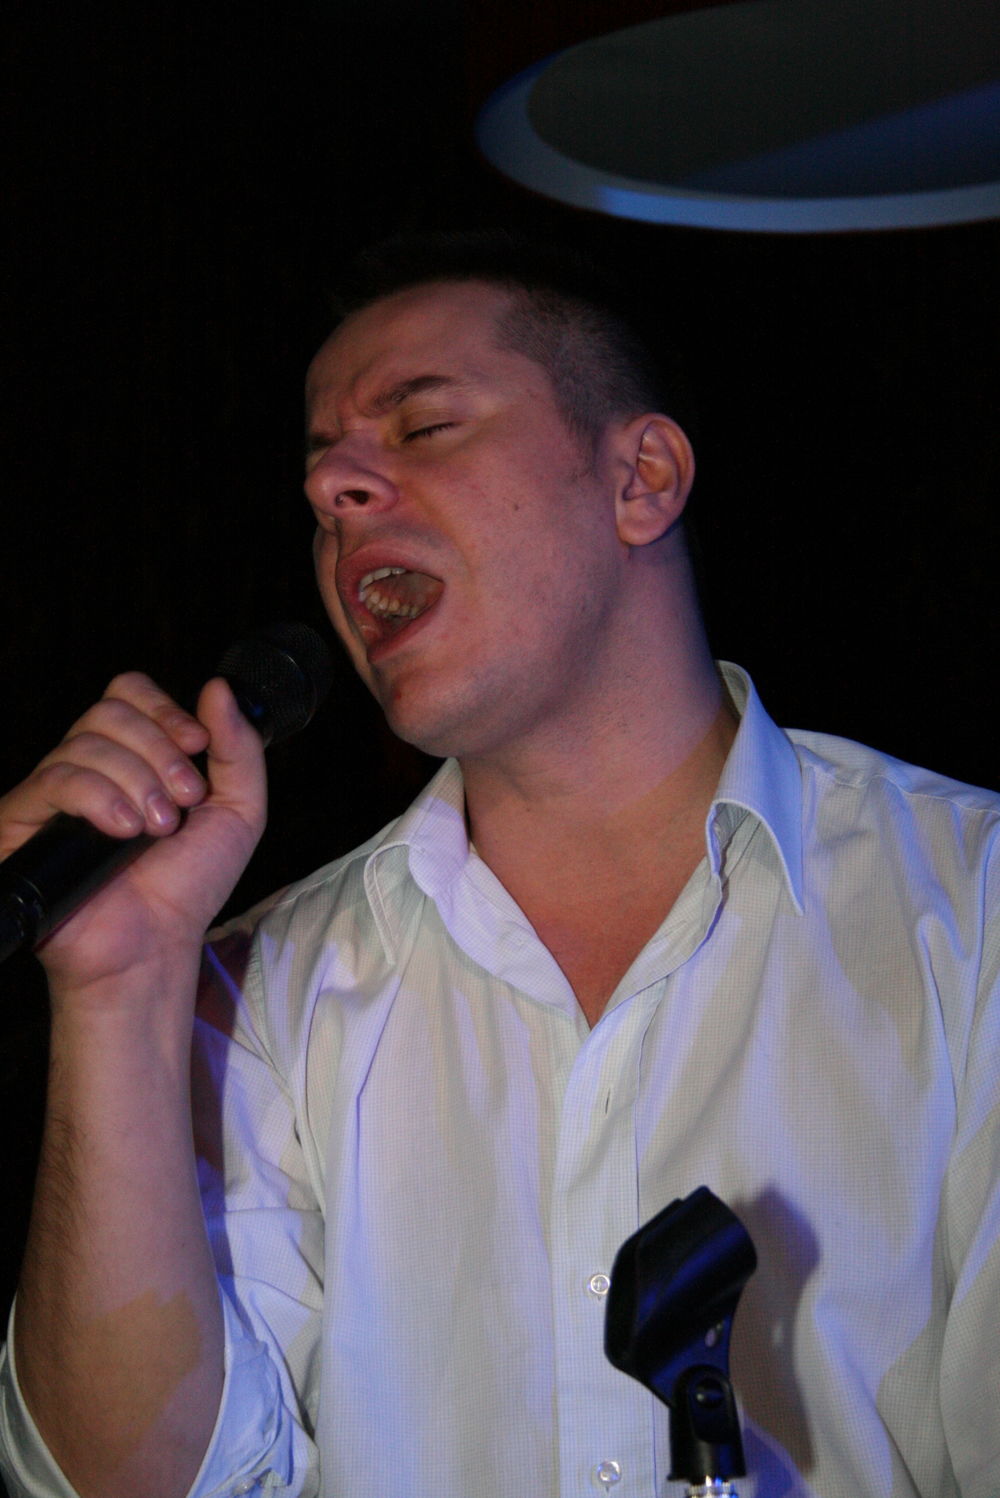 Kantautor Vlado Georgiev održao je mini solistički koncert na beogradskom splavu H20 pred više stotina obožavalaca, a među njima je bio i vlasnik televizije Pink, Željko Mitrović